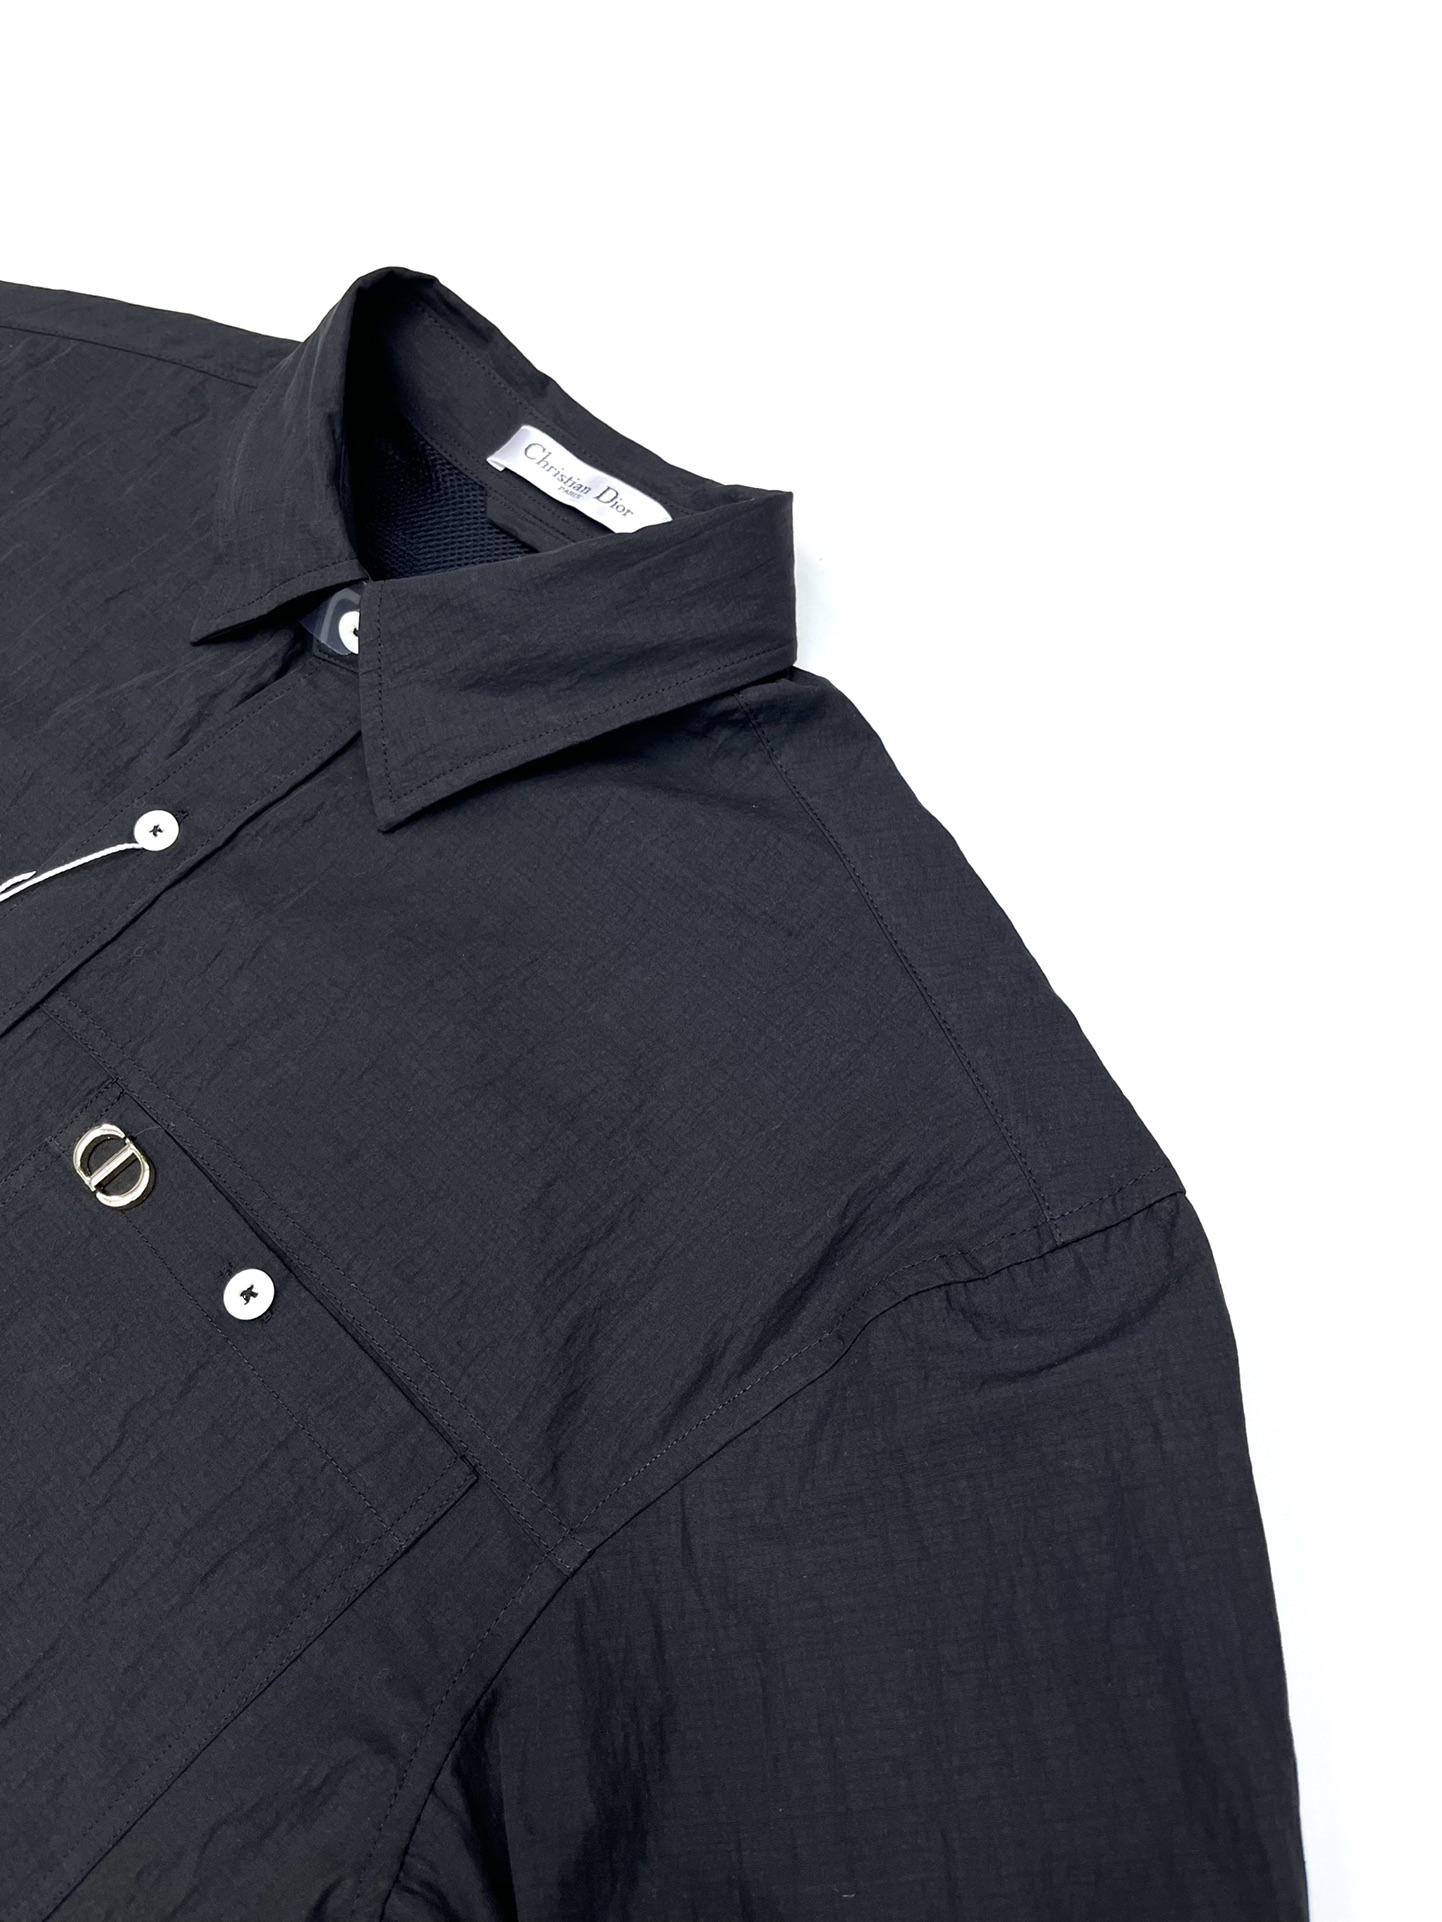 Dio*2024ss春夏新款衬衫经典设计感百搭单品品质更是无法挑剔品控可以直接入手不容过错的高端臻品！时